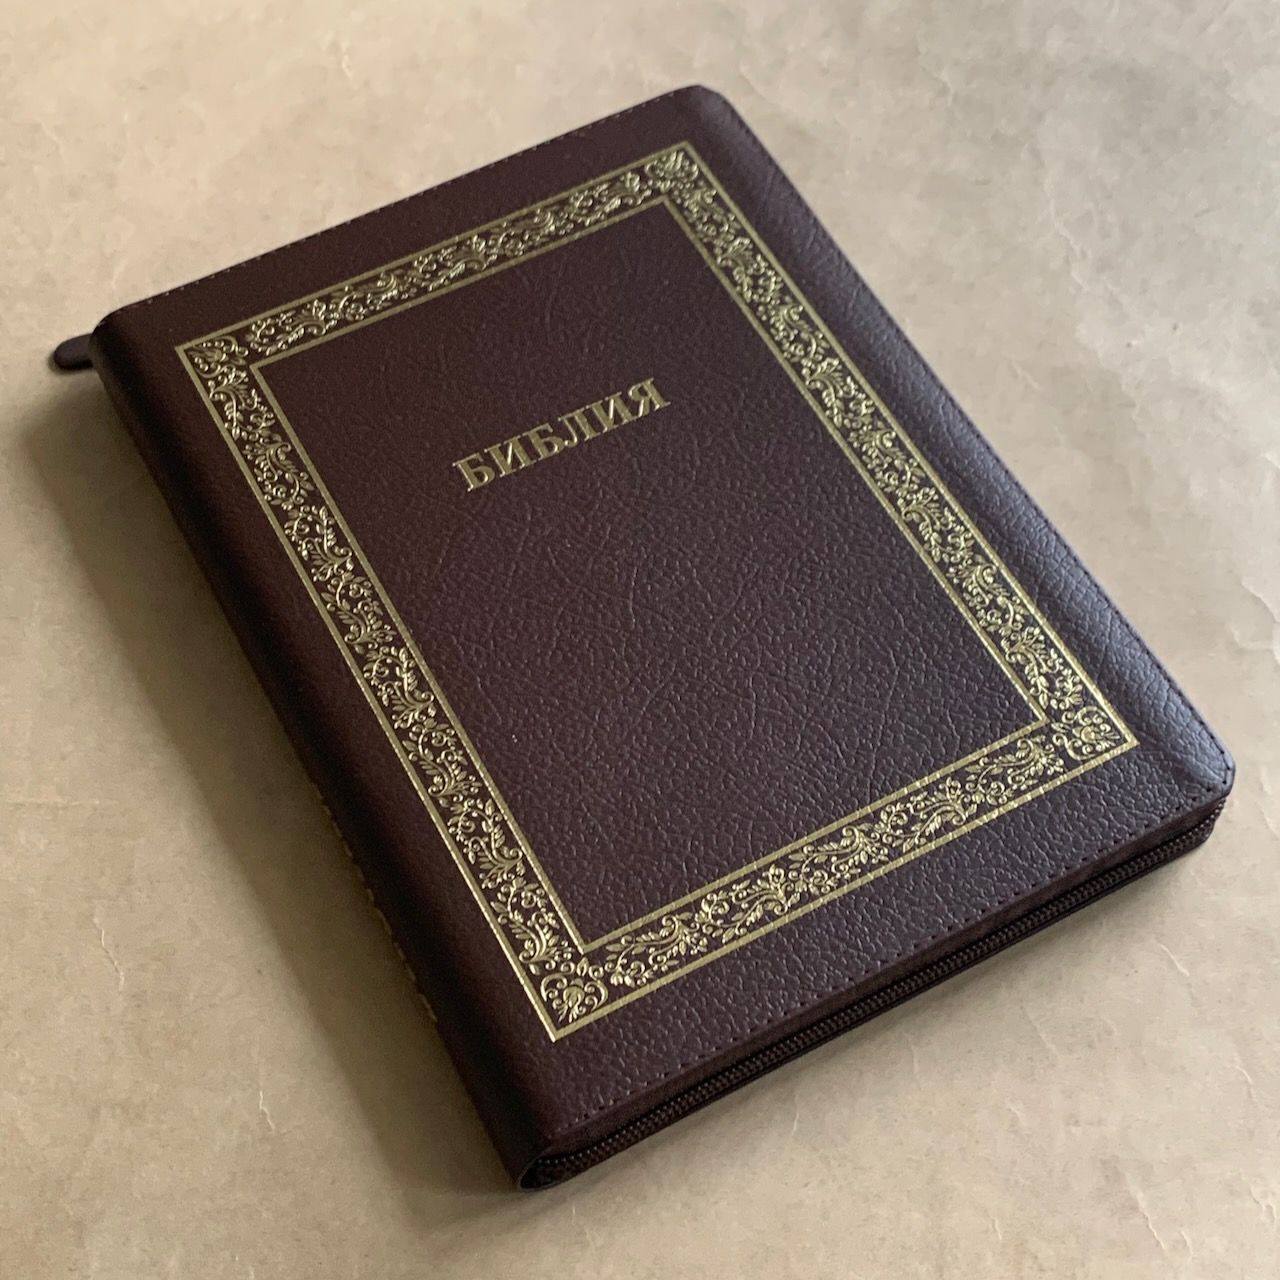 Библия 076z код B2, дизайн "золотая рамка растительный орнамент", кожаный переплет на молнии, цвет коричневый пятнистый, размер 180x243 мм